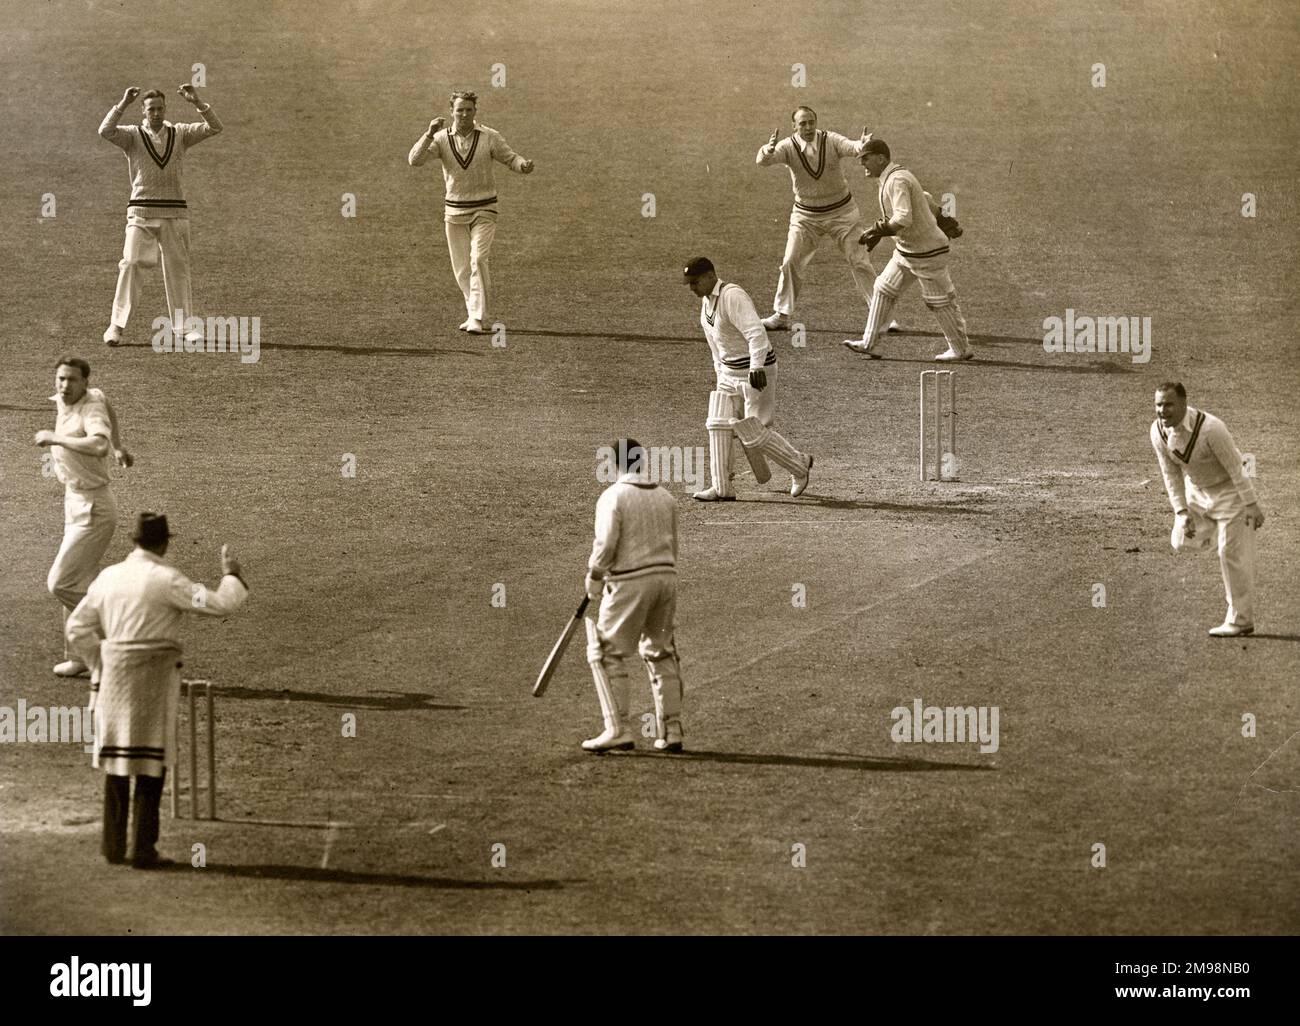 County Cricket Match im Oval im Jahr 1939 – ein Wicket ist gerade gefallen und liegt hinter dem Ziel zurück. Der Bowler scheint der Surrey-Spieler Alf Gover zu sein. Stockfoto